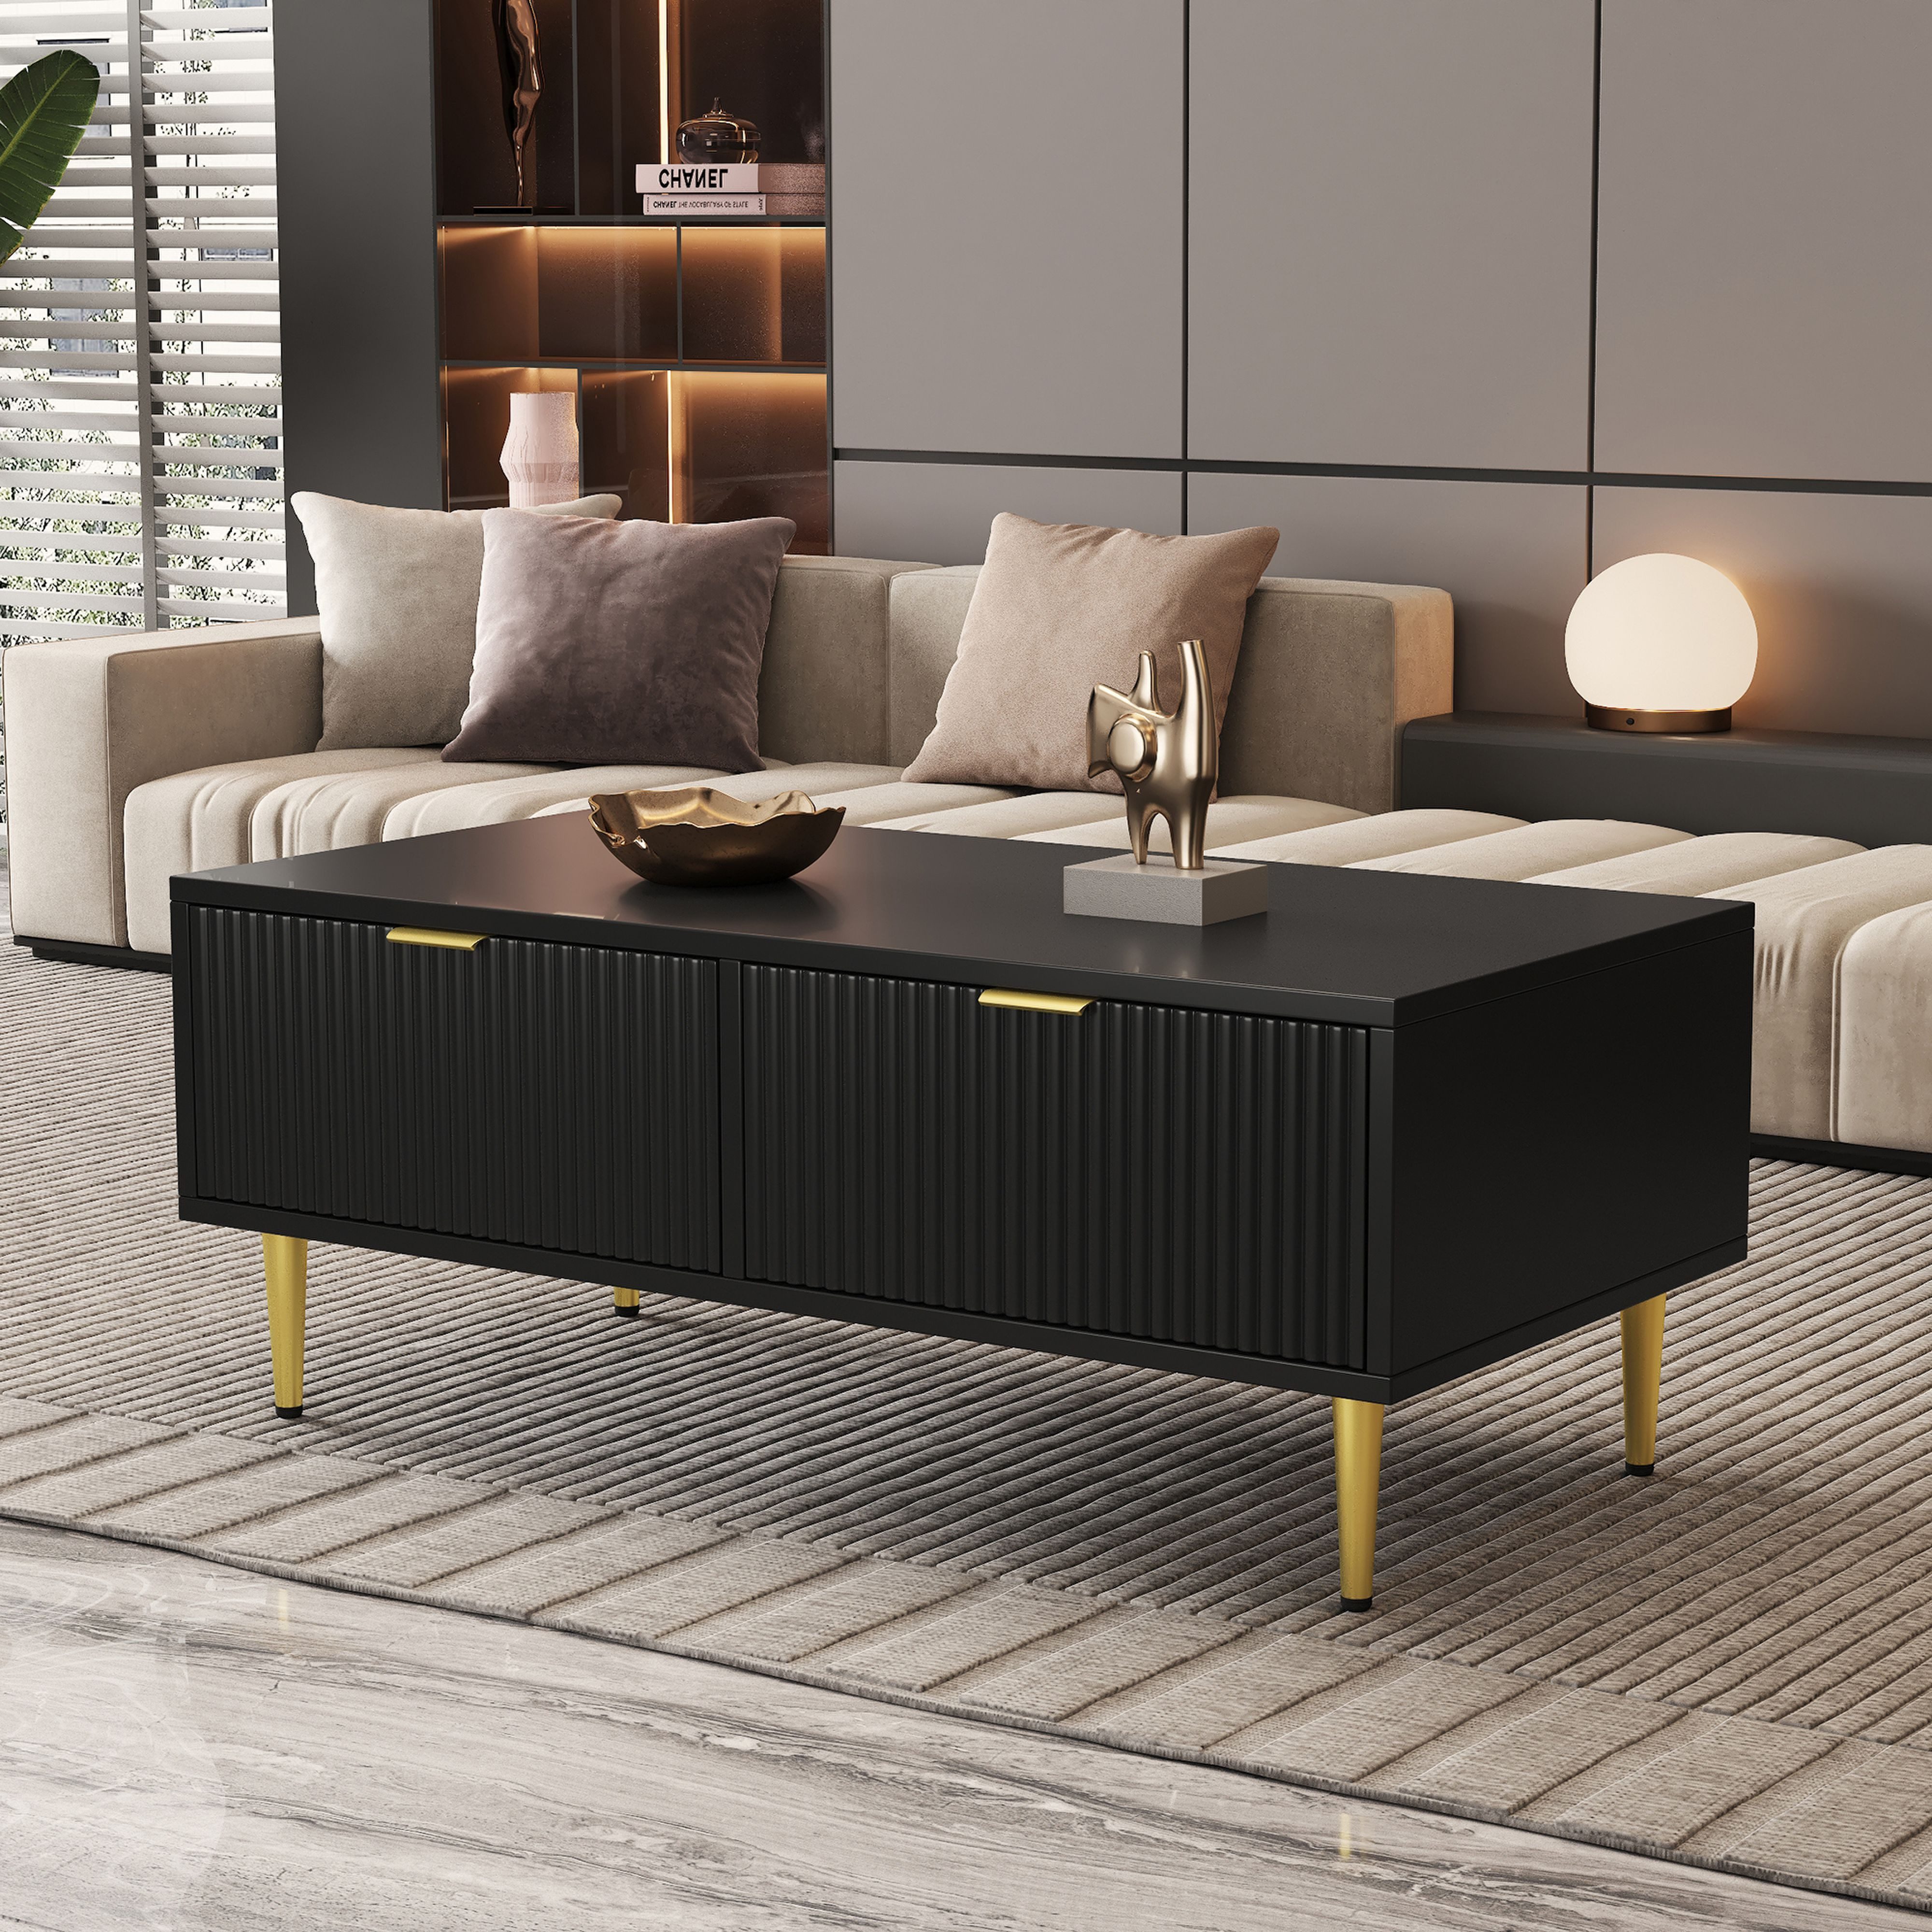 BlingBin Couchtisch Sofa niedriger Tisch (100*50*40cm), mit Golddekoration, 2 Schubladen, vertikales Streifendesign